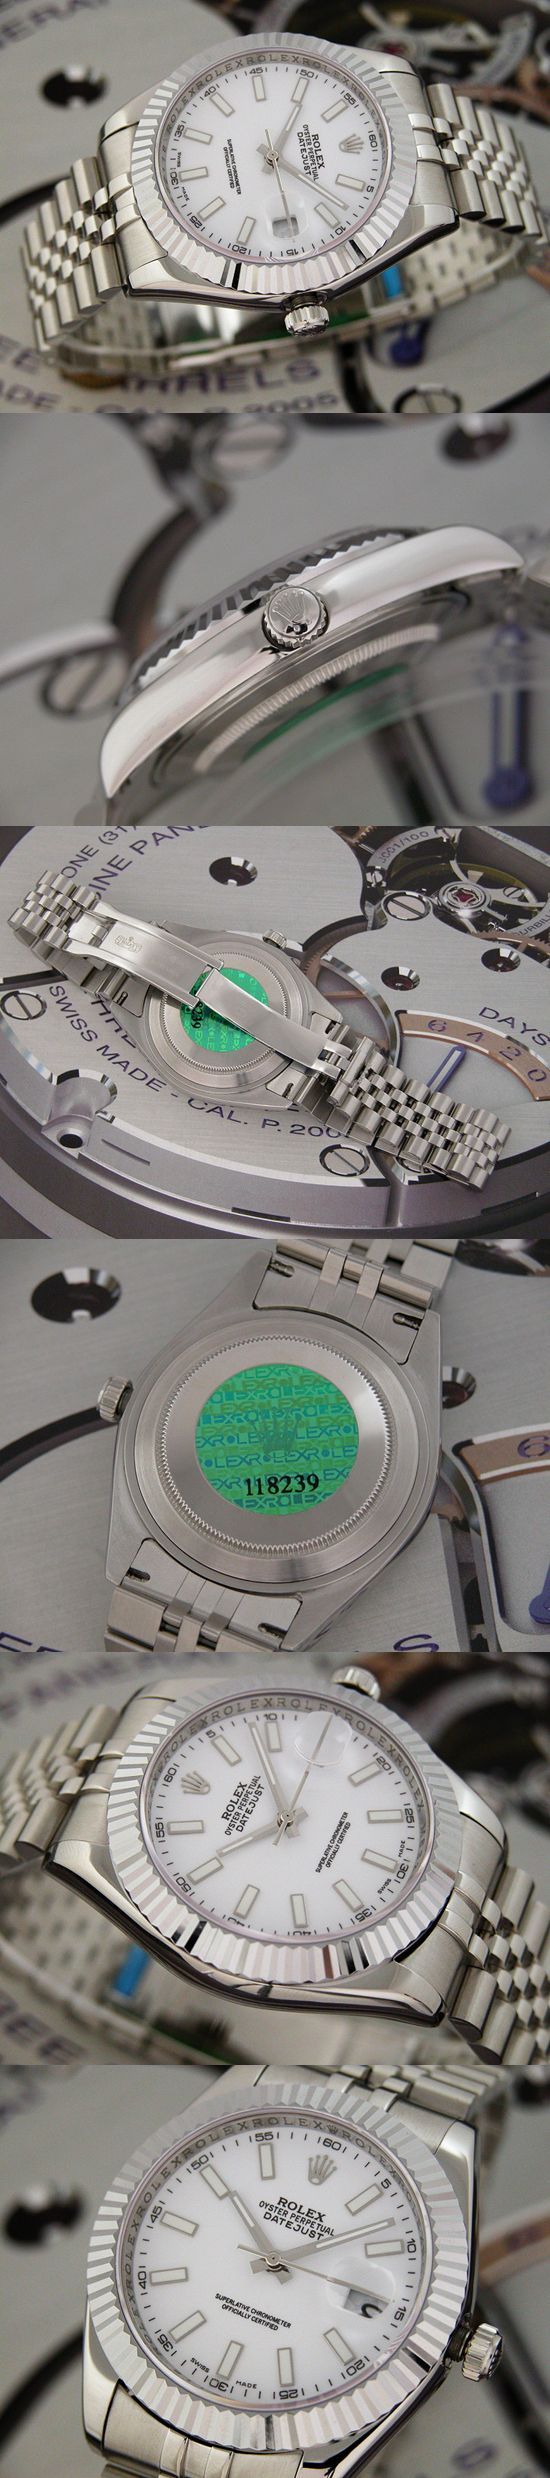 おしゃれなブランド時計がロレックス-デイトジャスト-ROLEX-118239-101-男性用を提供します.